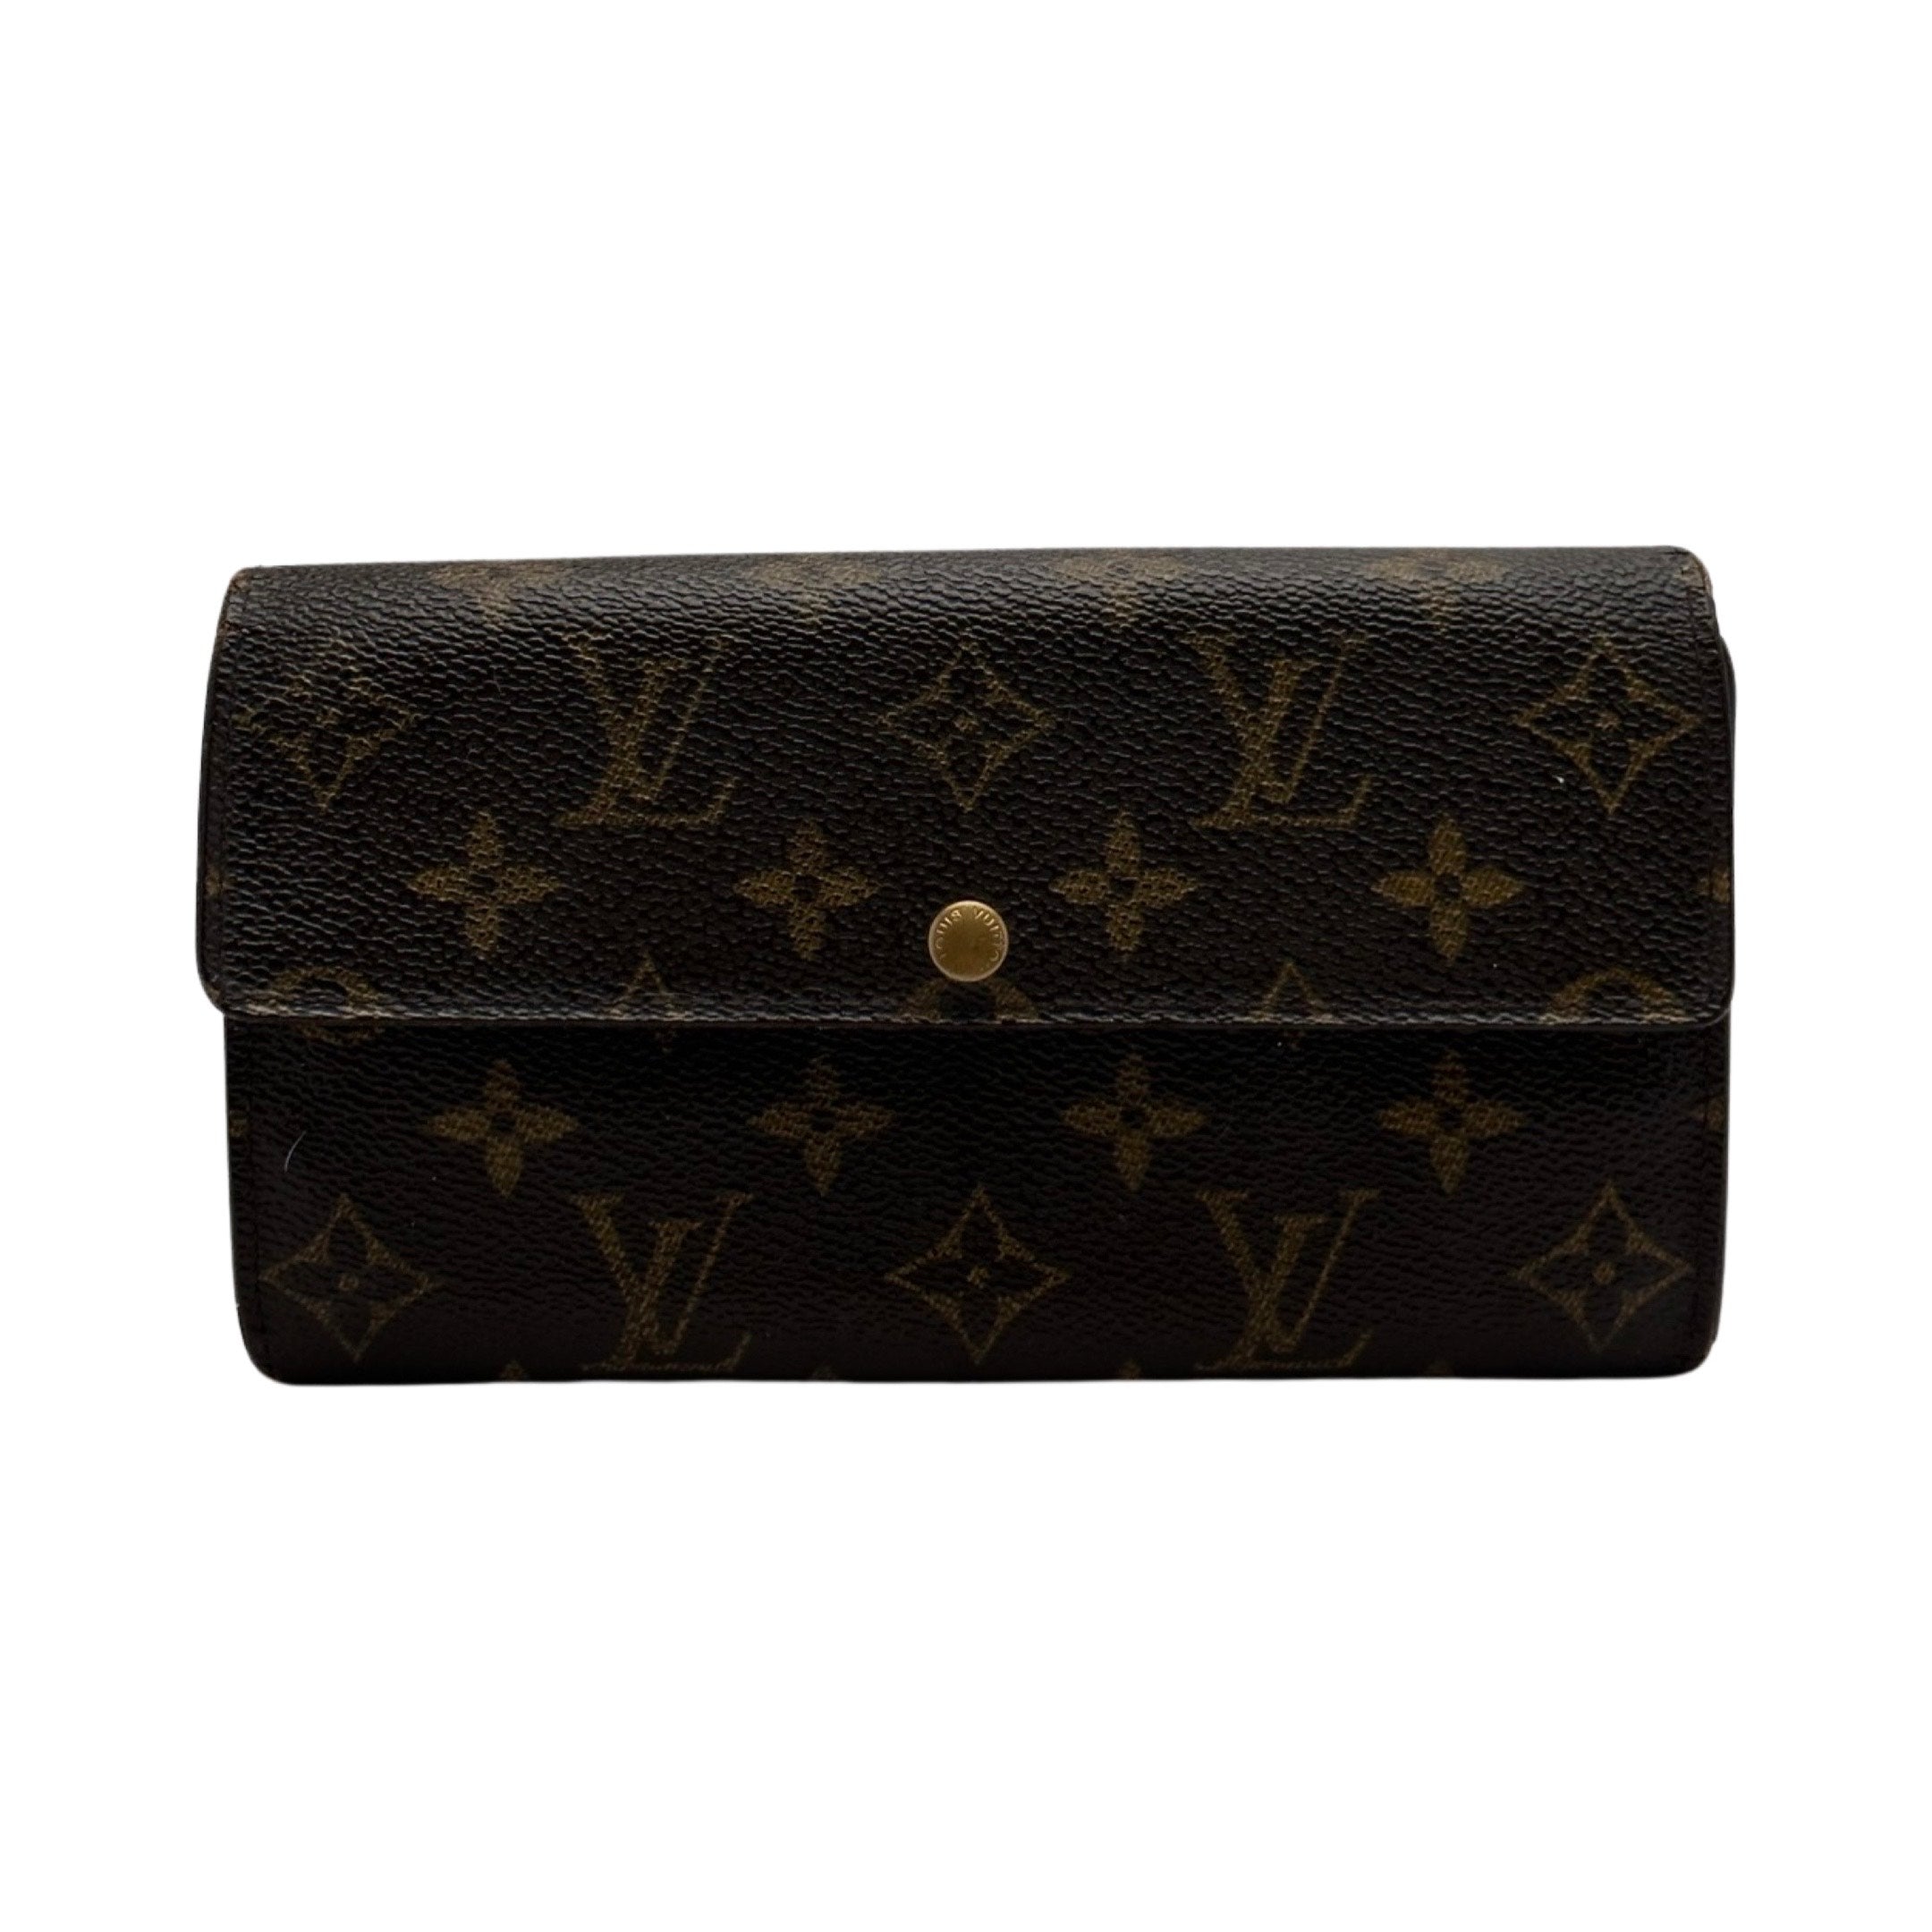 Authentic Louis Vuitton Mono Sarah Wallet